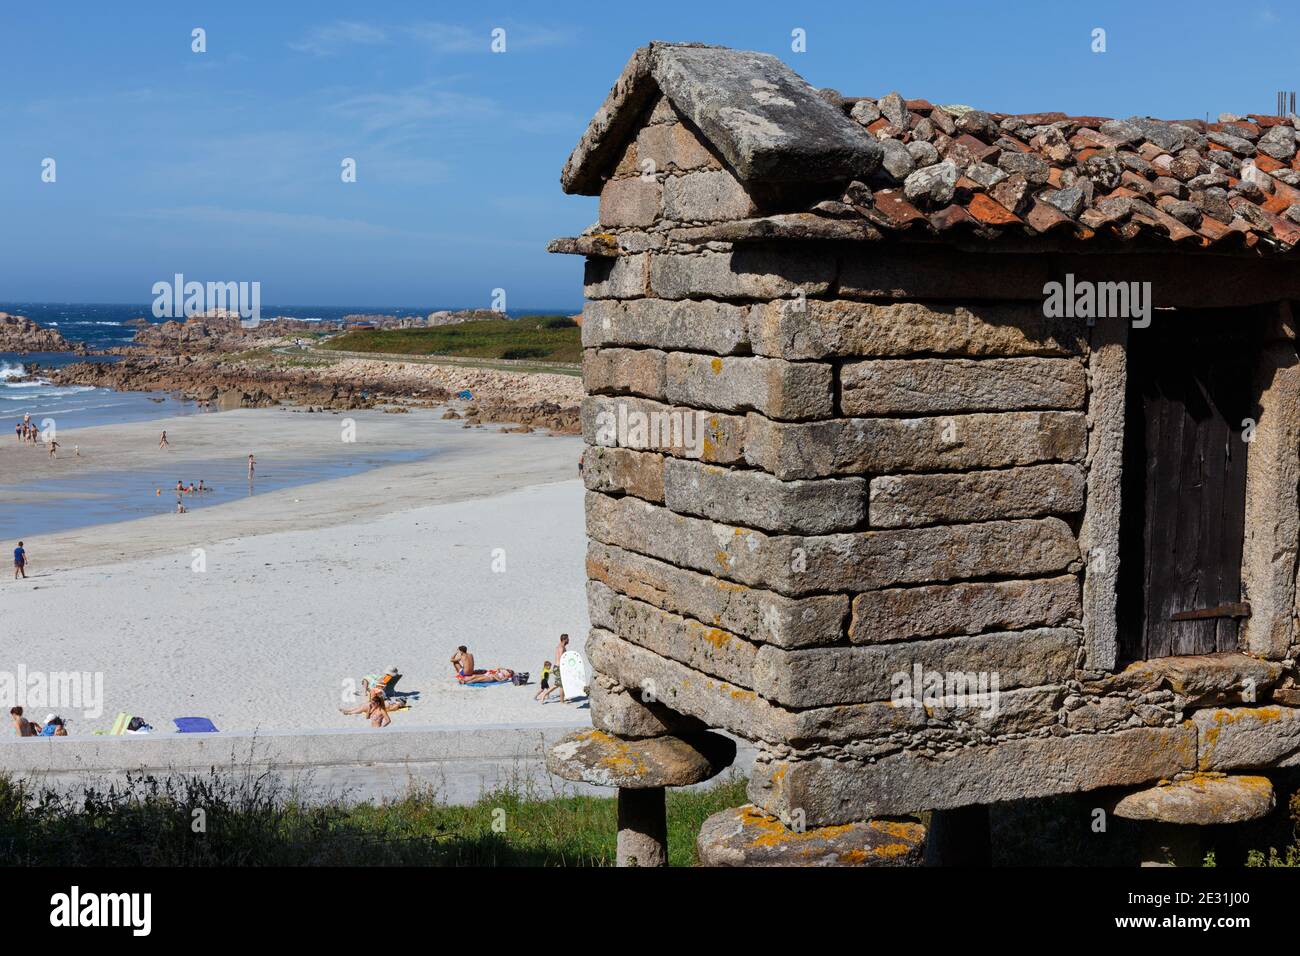 Vista parziale di un orreo galiziano e delle persone che prendono il sole e nel mare dietro, Alou, la Coruña (la Coruna), Galizia, Spagna Foto Stock